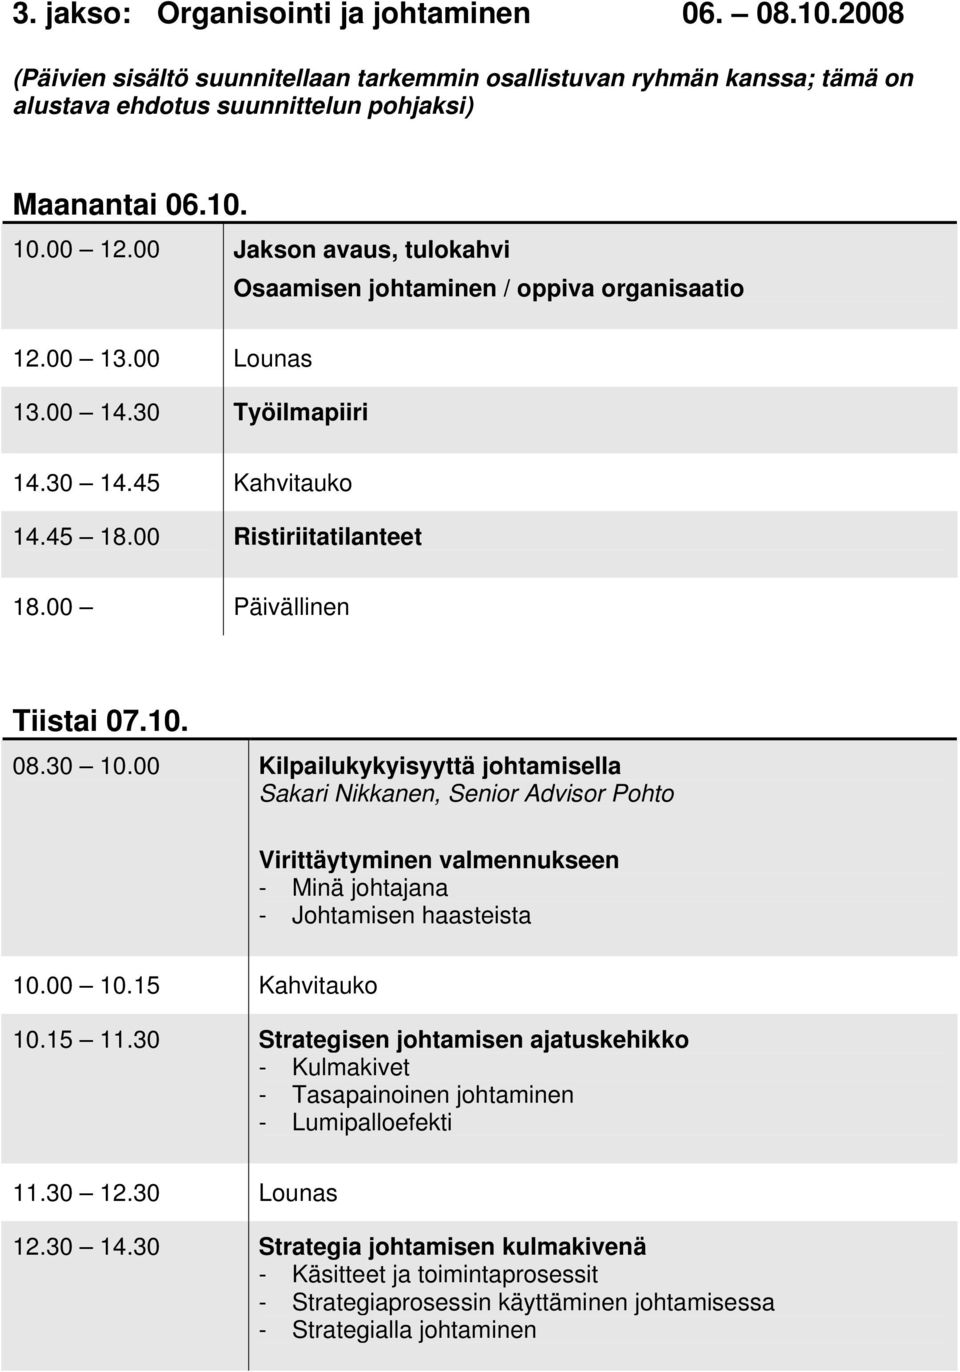 10. 08.30 10.00 Kilpailukykyisyyttä johtamisella Sakari Nikkanen, Senior Advisor Pohto Virittäytyminen valmennukseen - Minä johtajana - Johtamisen haasteista 10.15 11.